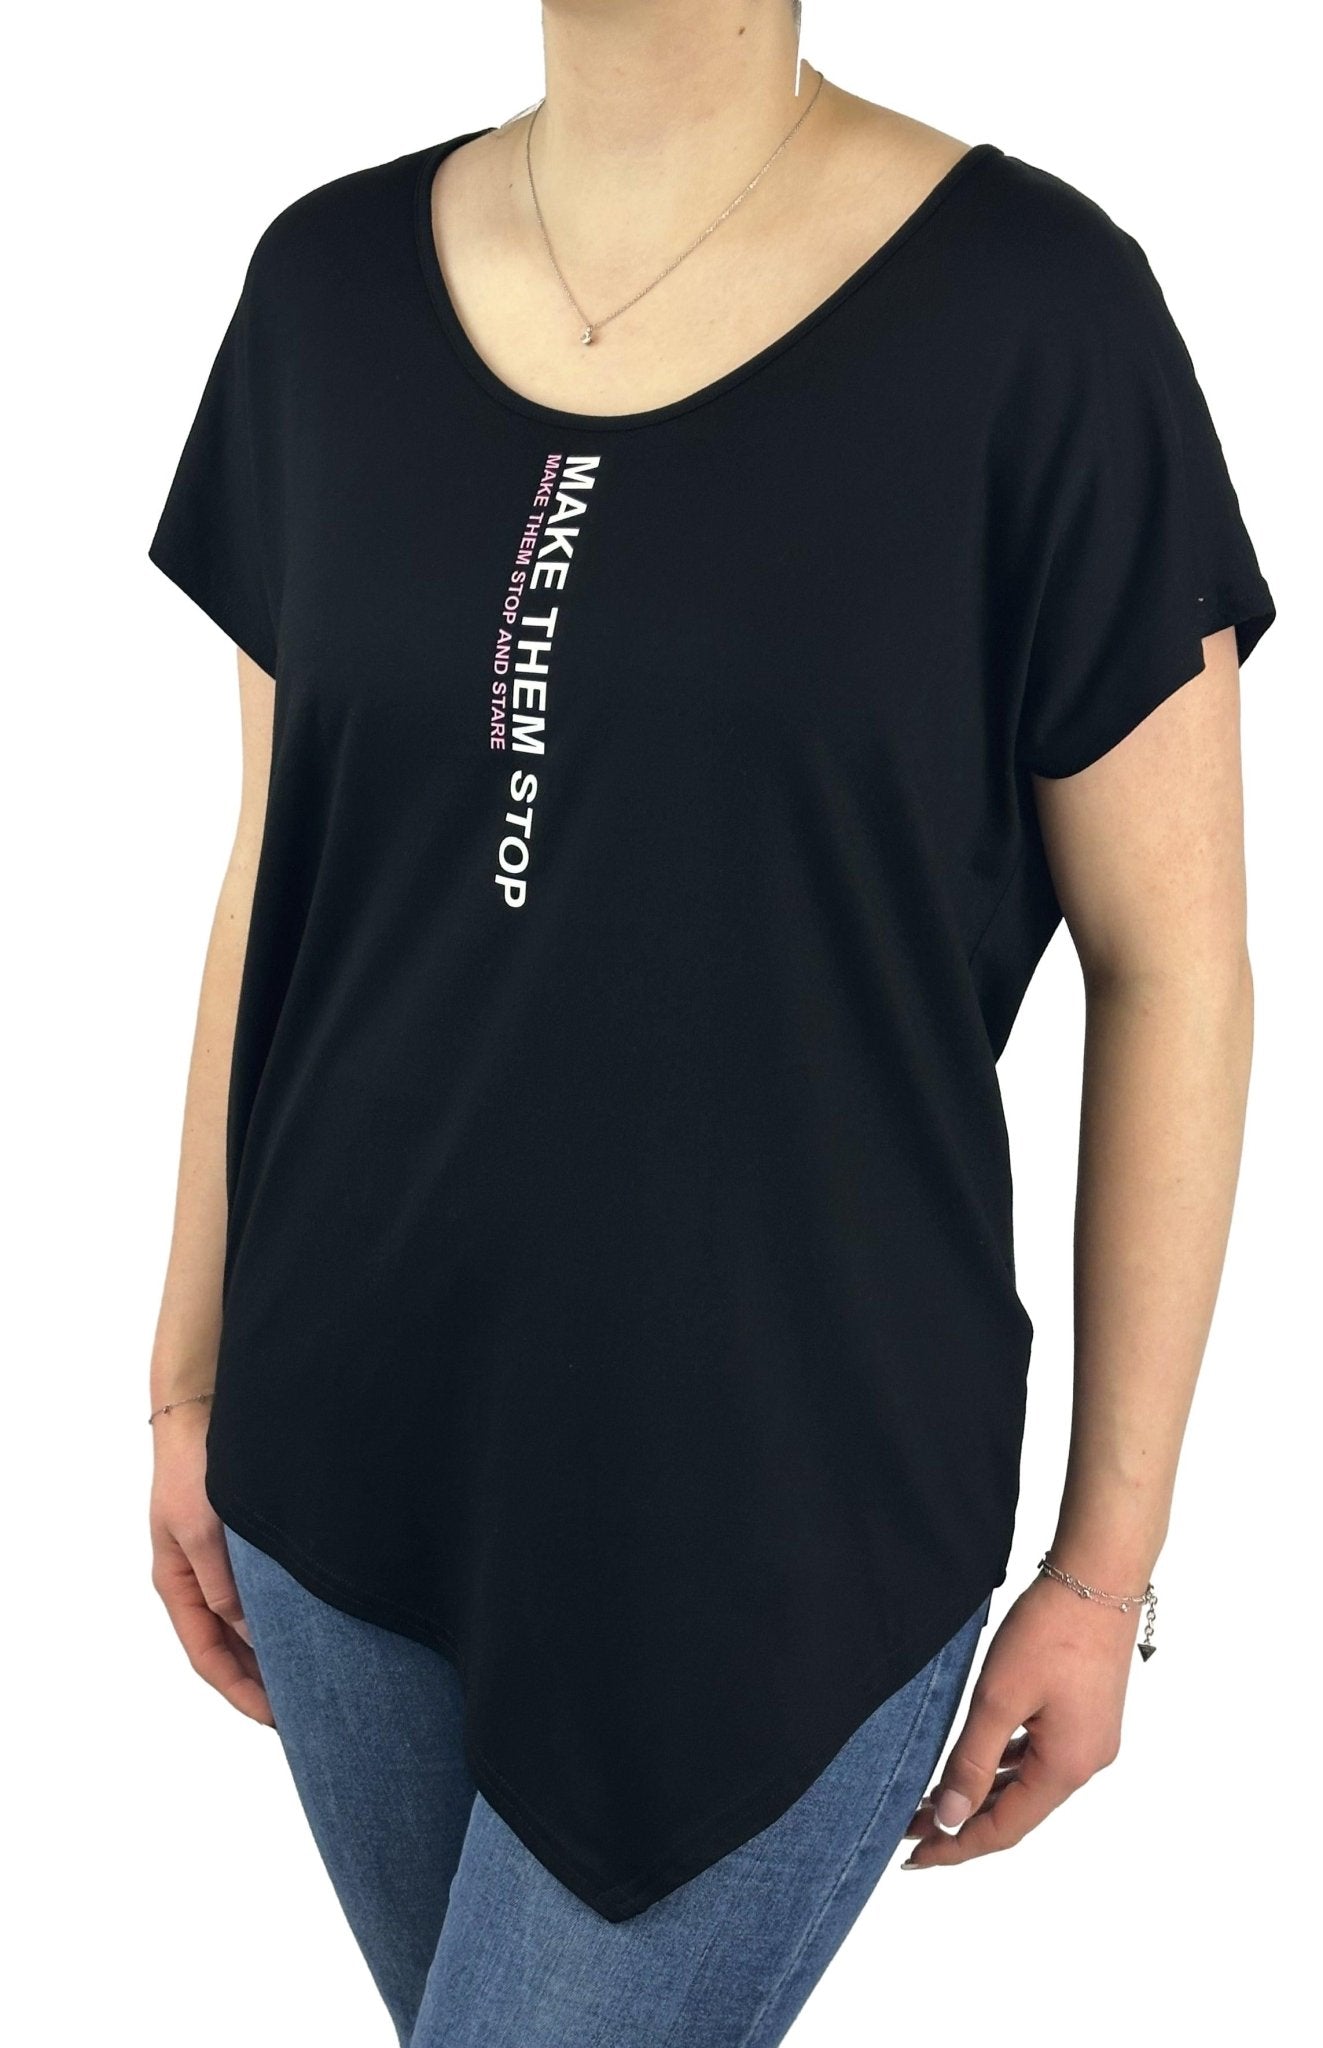 Doris Streich Shirt 549 270. Mode von Doris Streich